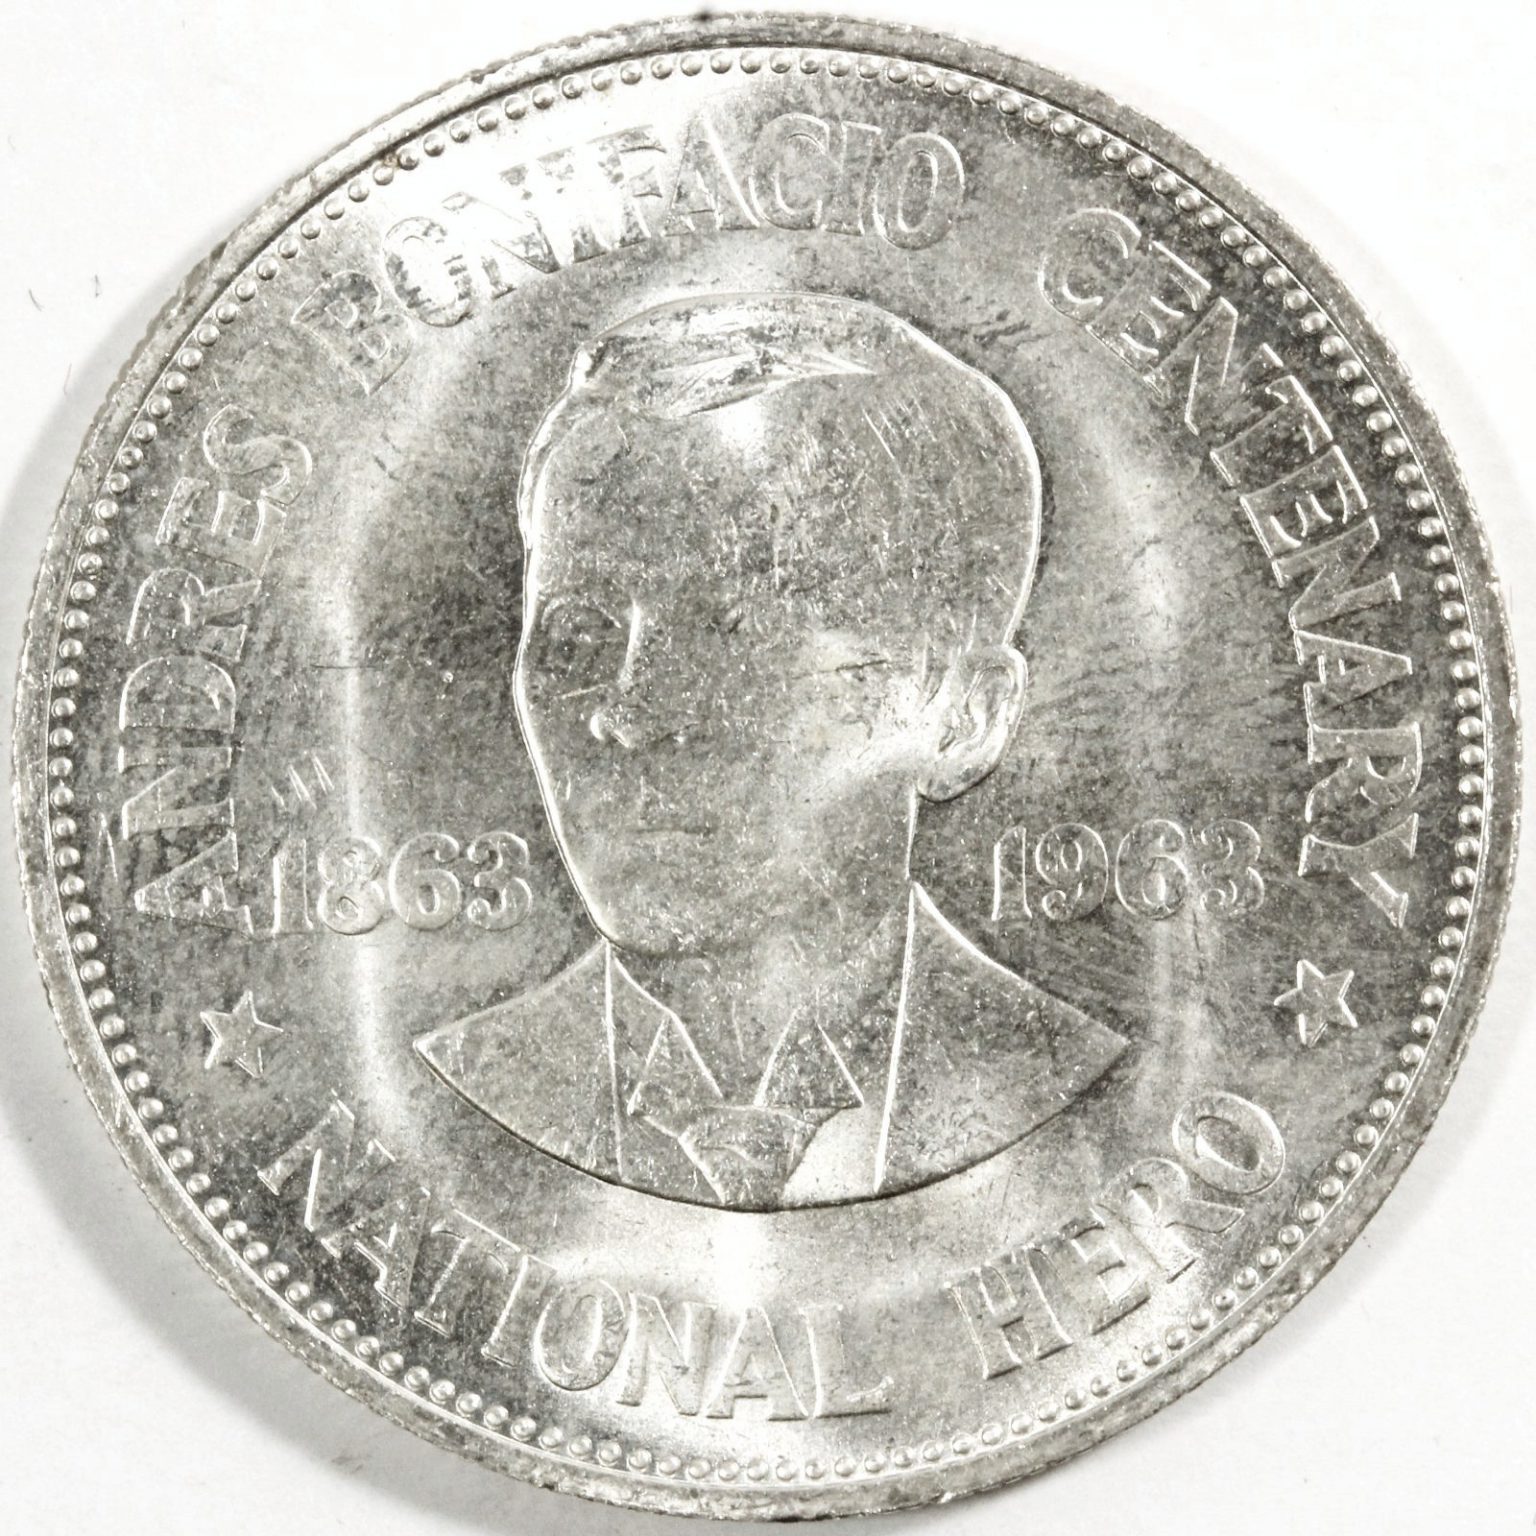 ゆみ様 アメリカ領フィリピン 1ペソ銀貨 大型 古銭 銀貨-